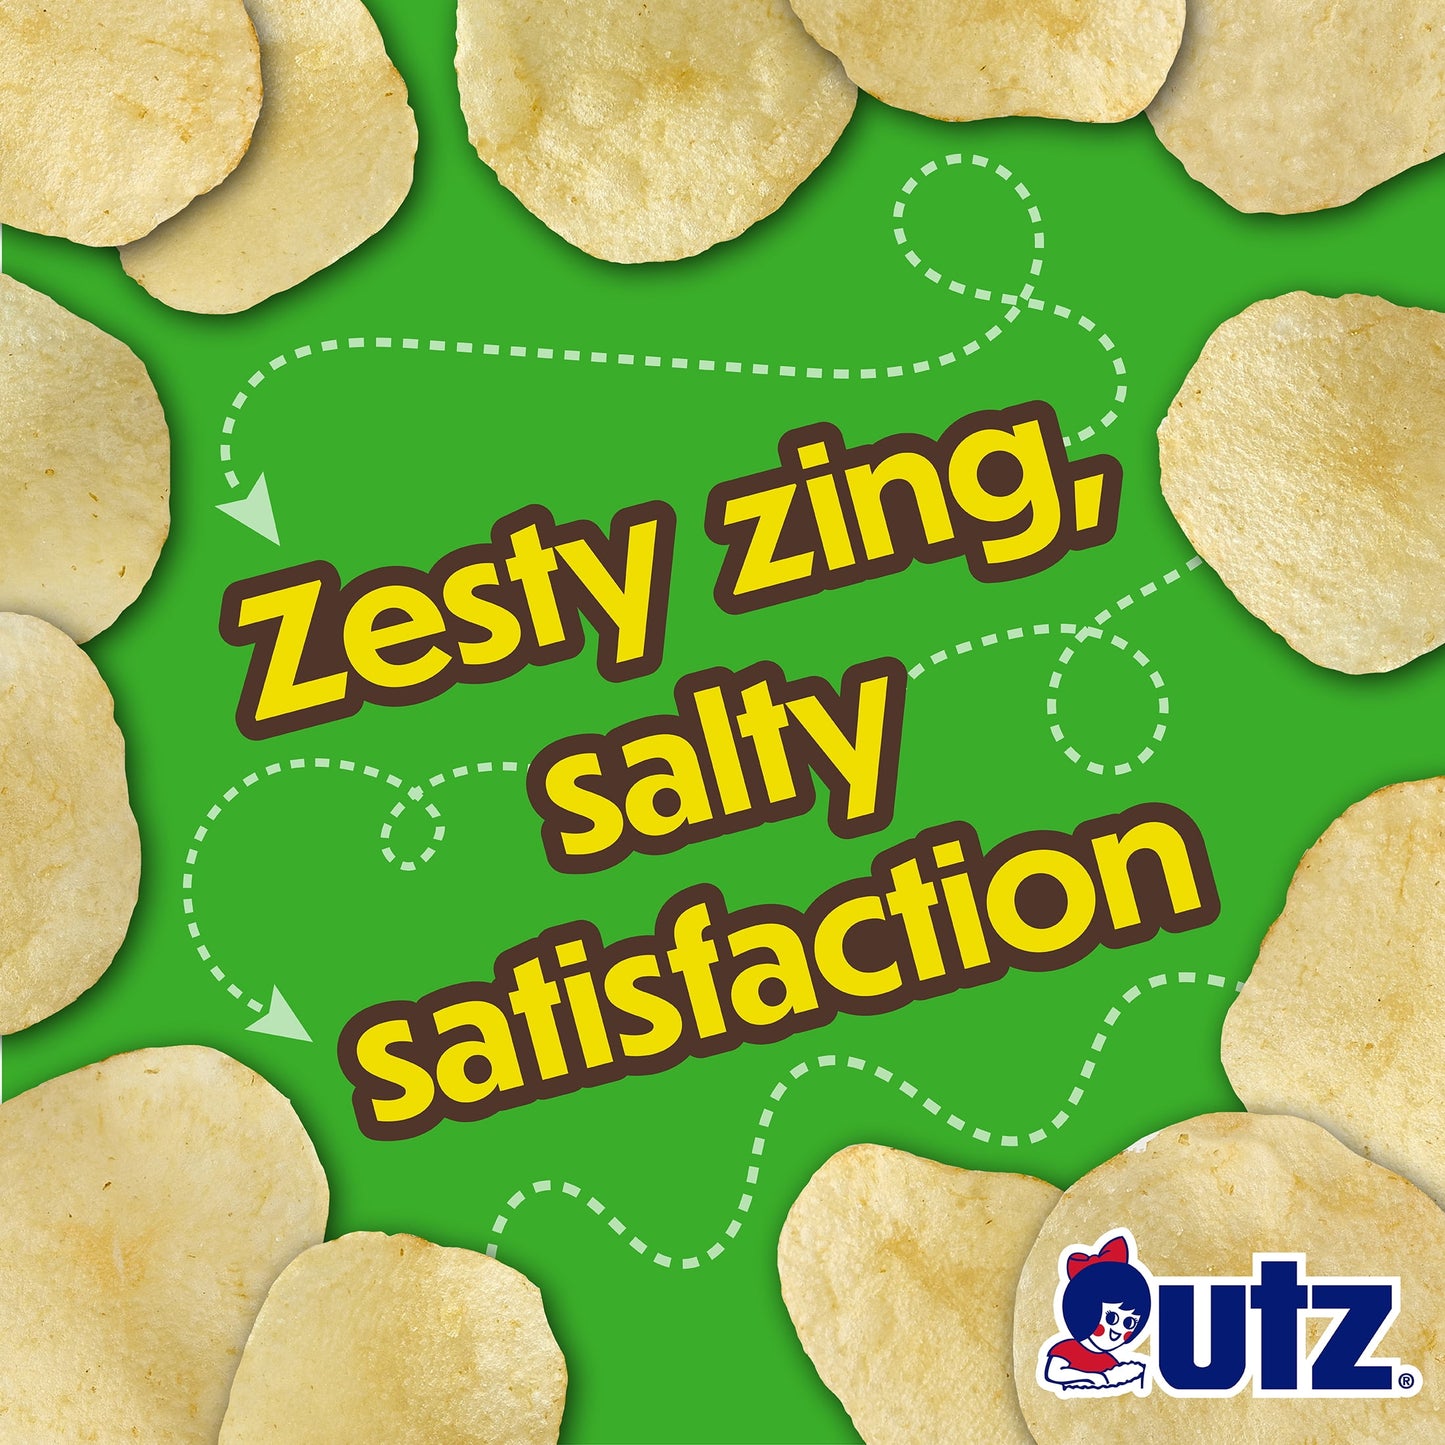 Salt 'N Vinegar Potato Chips, Gluten-Free, Family Size, 7.75 Oz Bag